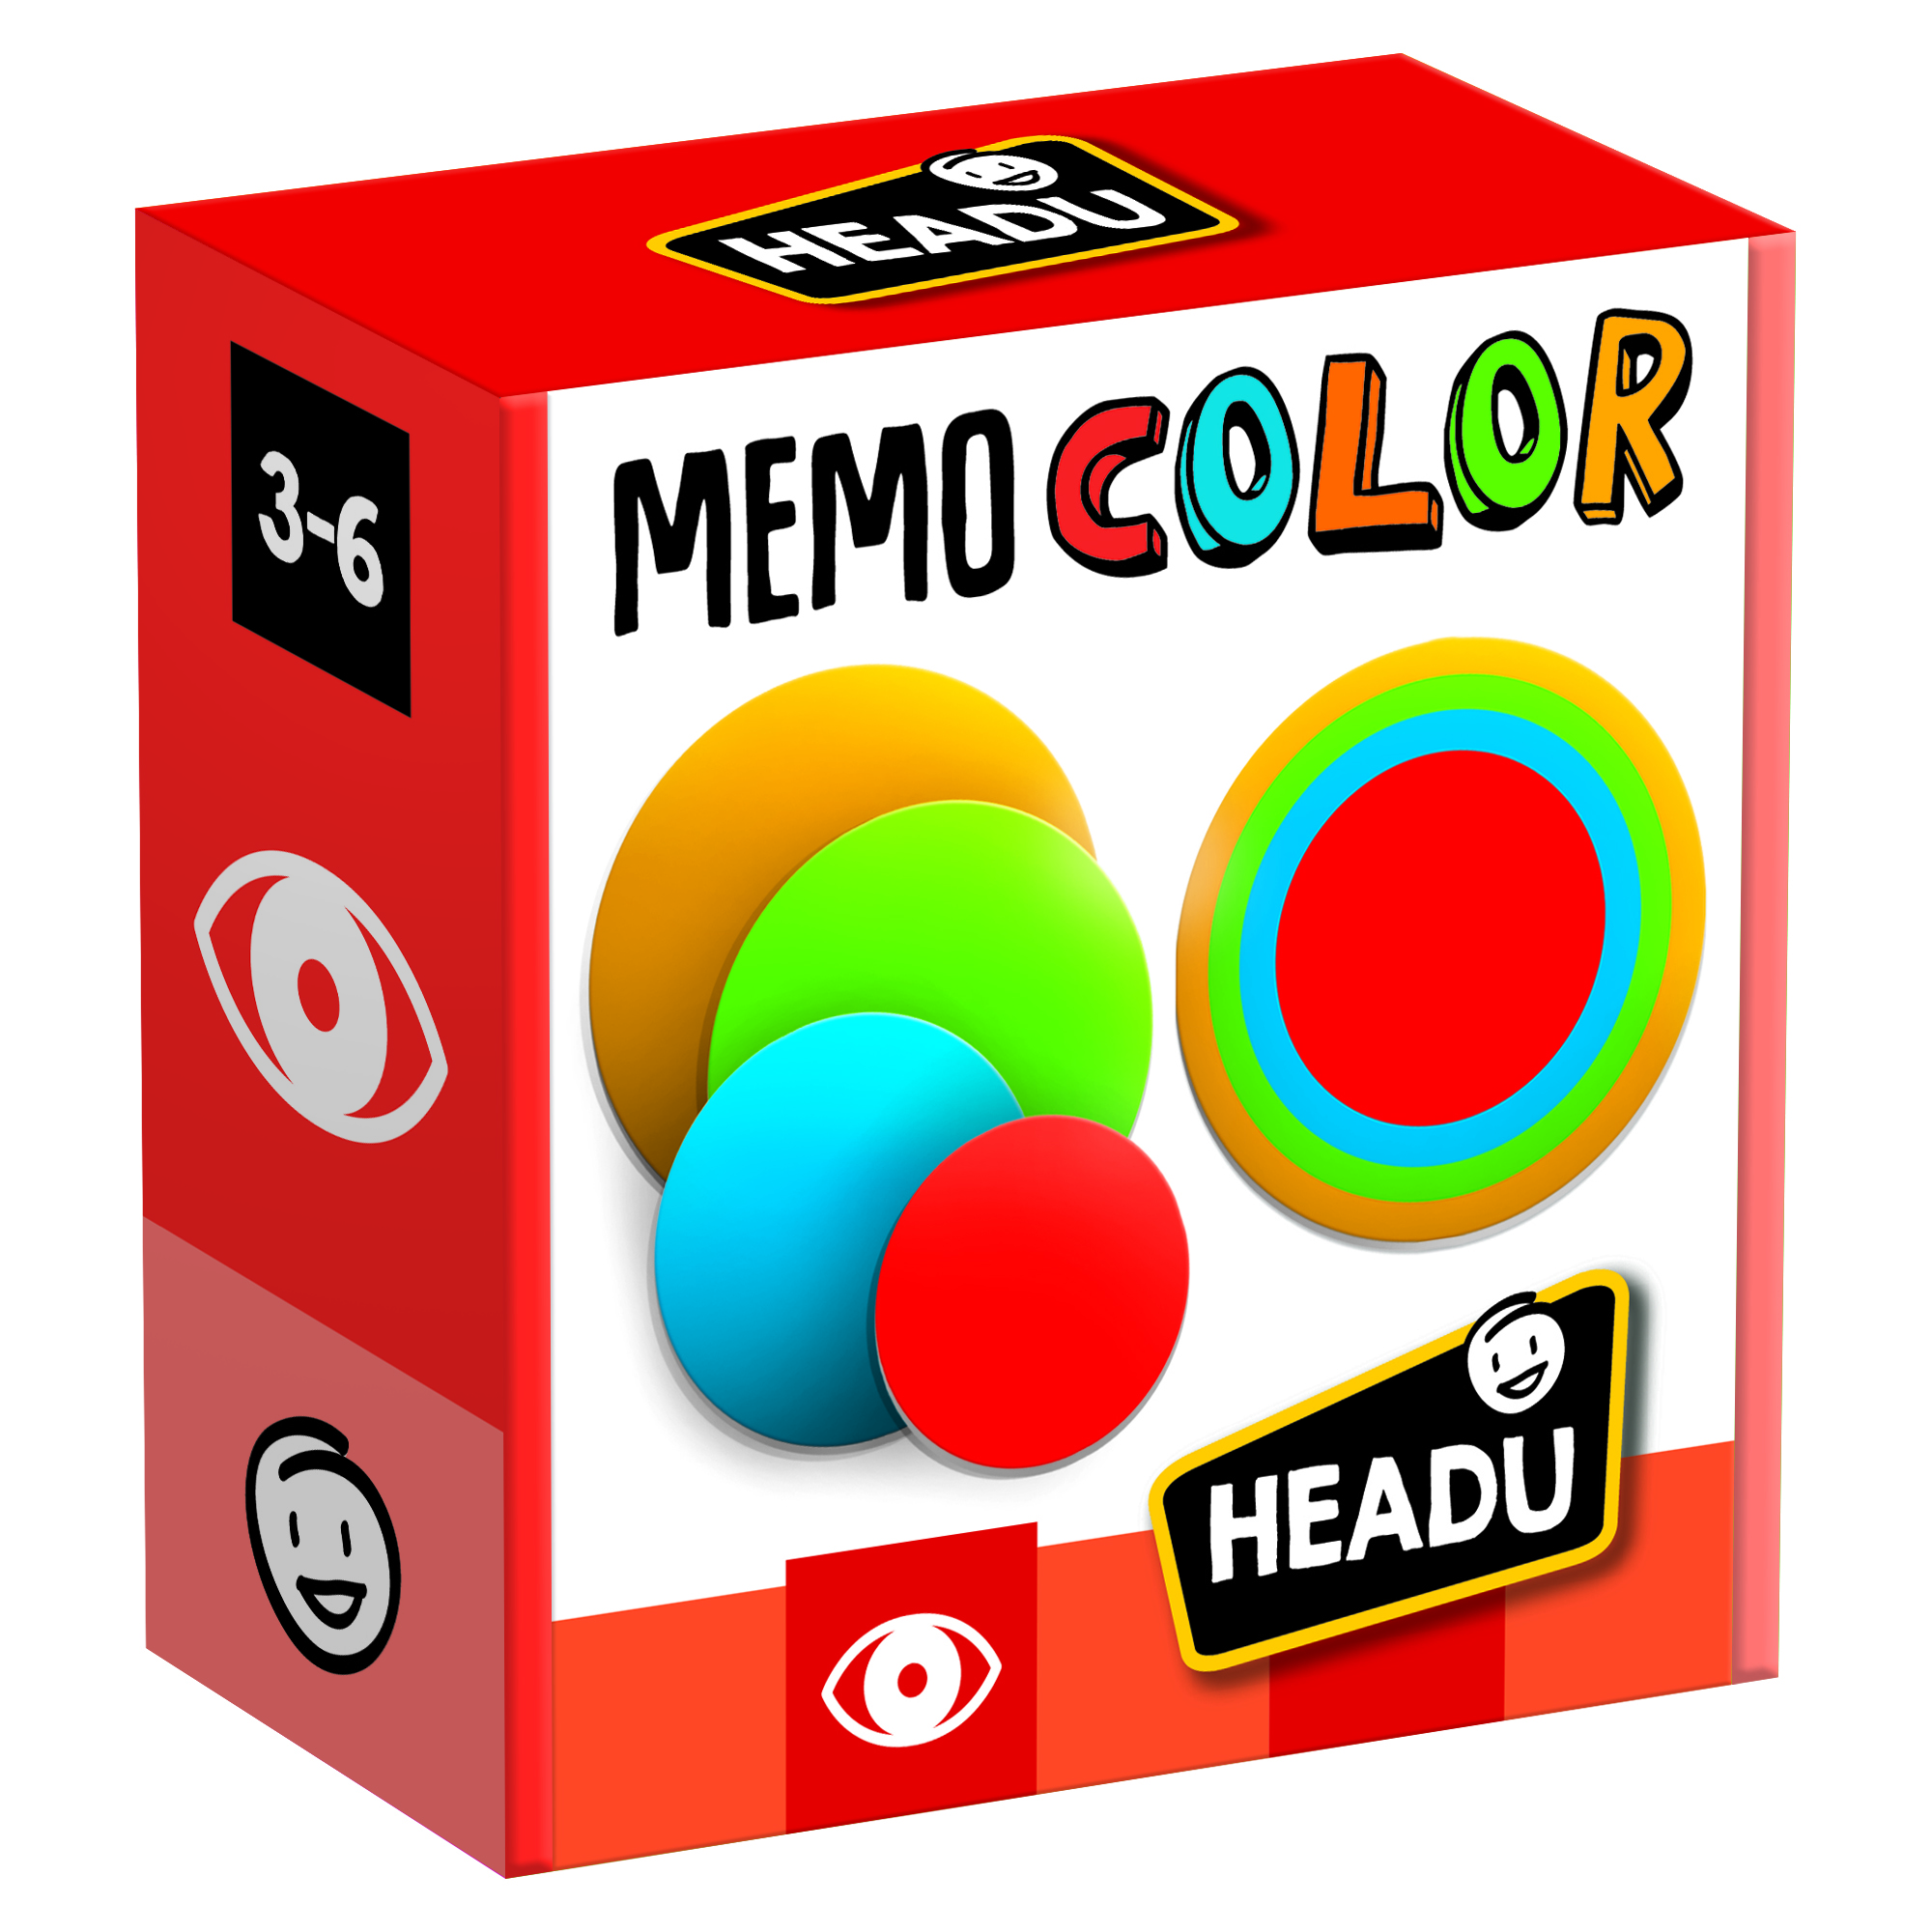 MEMO COLOR - Bộ thẻ chơi giúp rèn luyện trí nhớ, tăng khả năng tập trung cho trẻ từ 3-6 tuổi